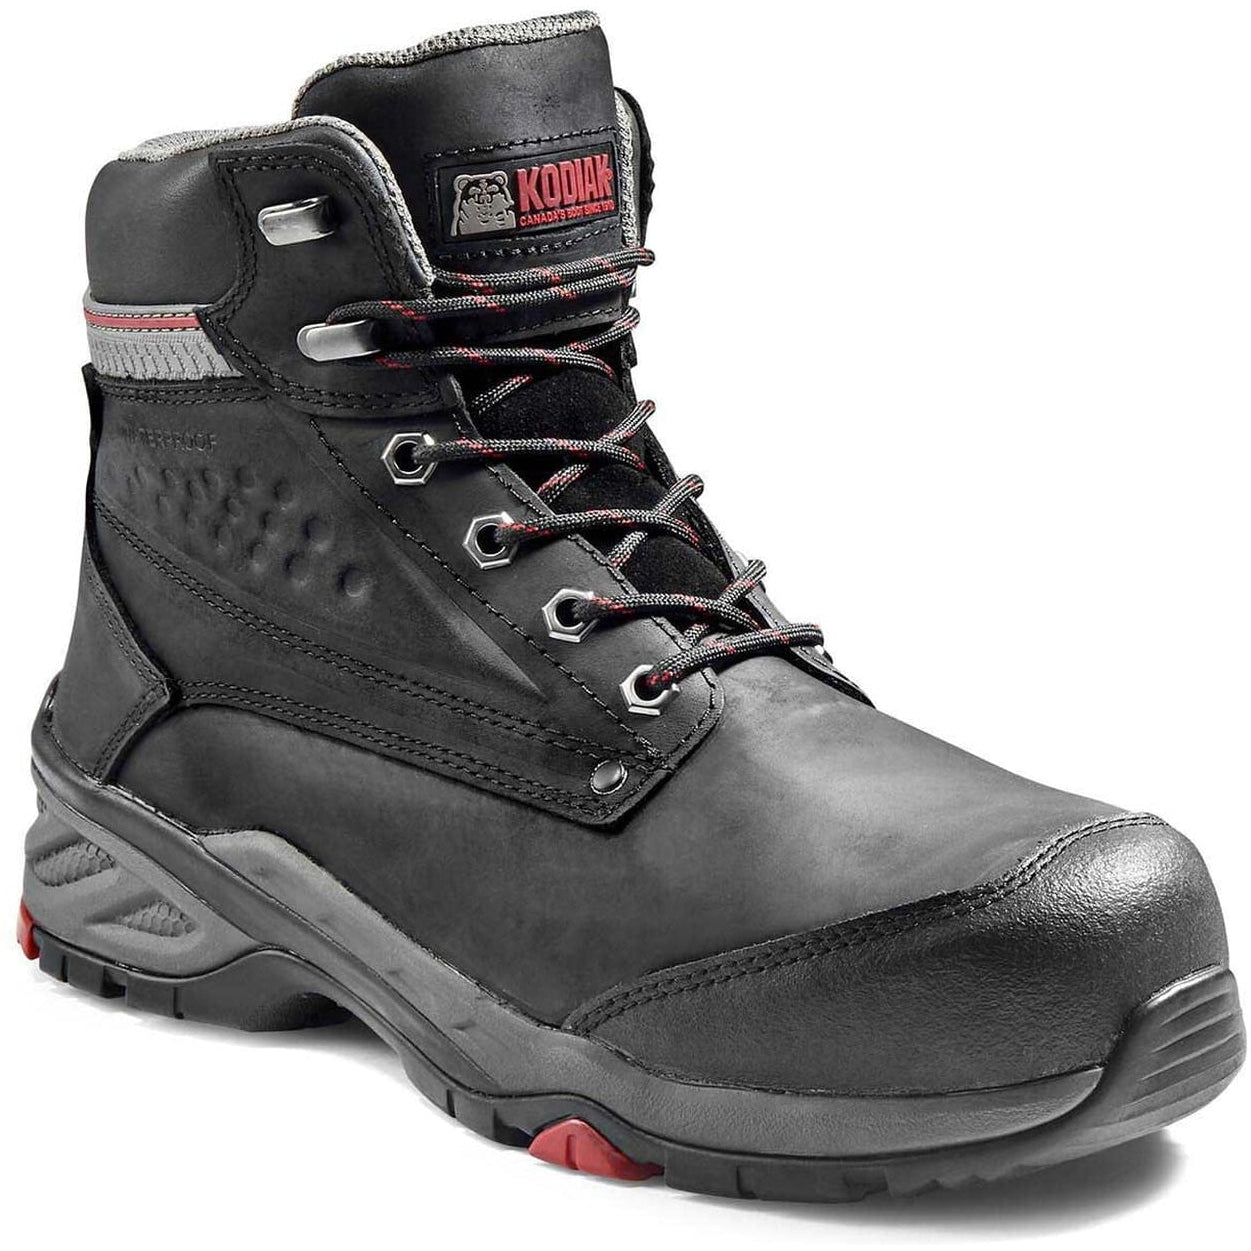 Kodiak Men's Crusade 6" Comp Toe WP Hiker Safety Work Boot -Black- K4NKBK 7 / Wide / Black - Overlook Boots